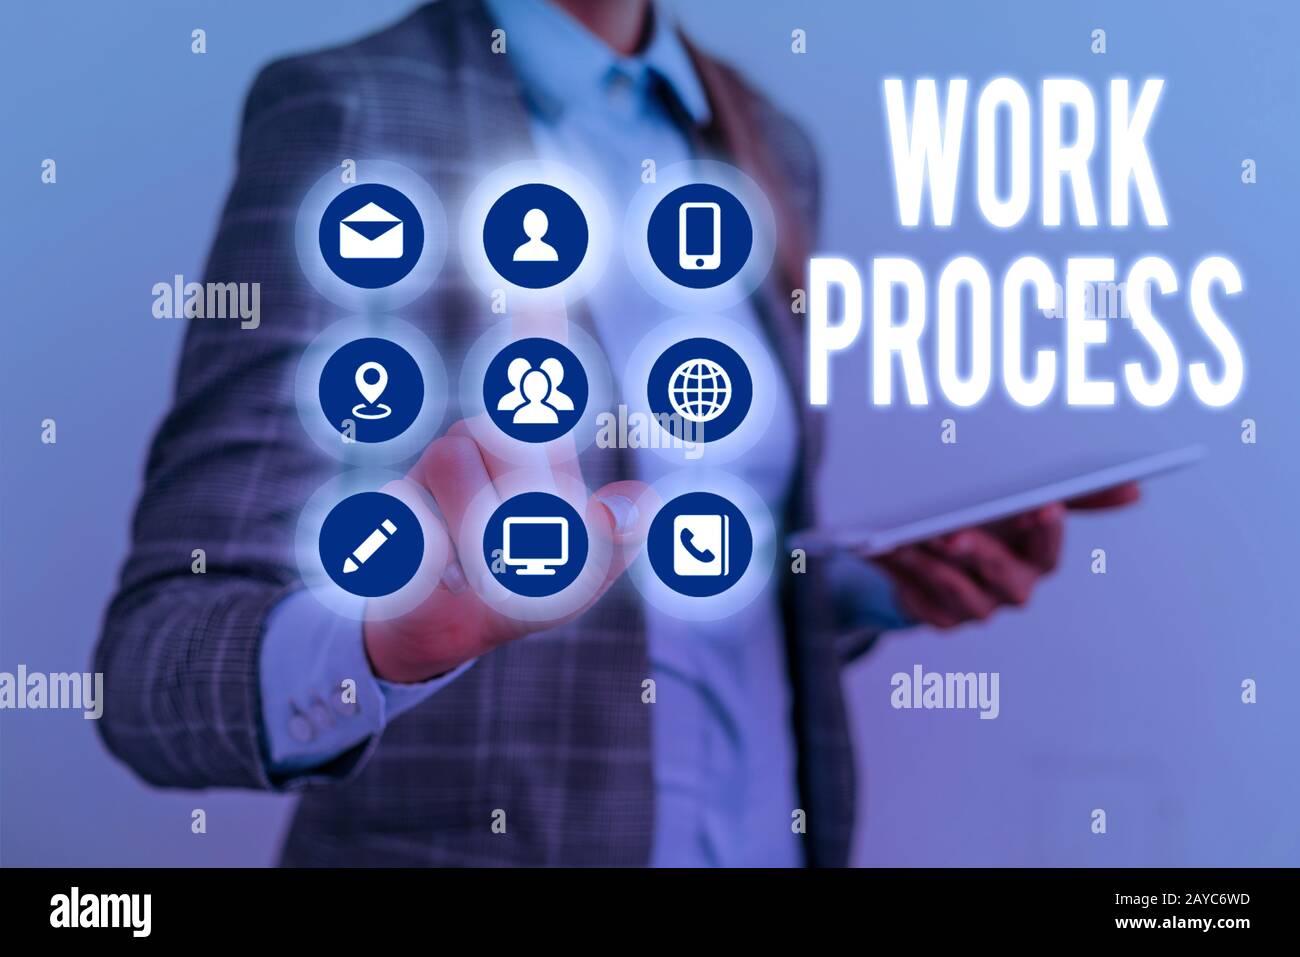 Hinweis zum Arbeitsprozess schreiben. Geschäftsfoto mit Standardverfahren zur Handhabung eines bestimmten Job-Regelsystems. Stockfoto